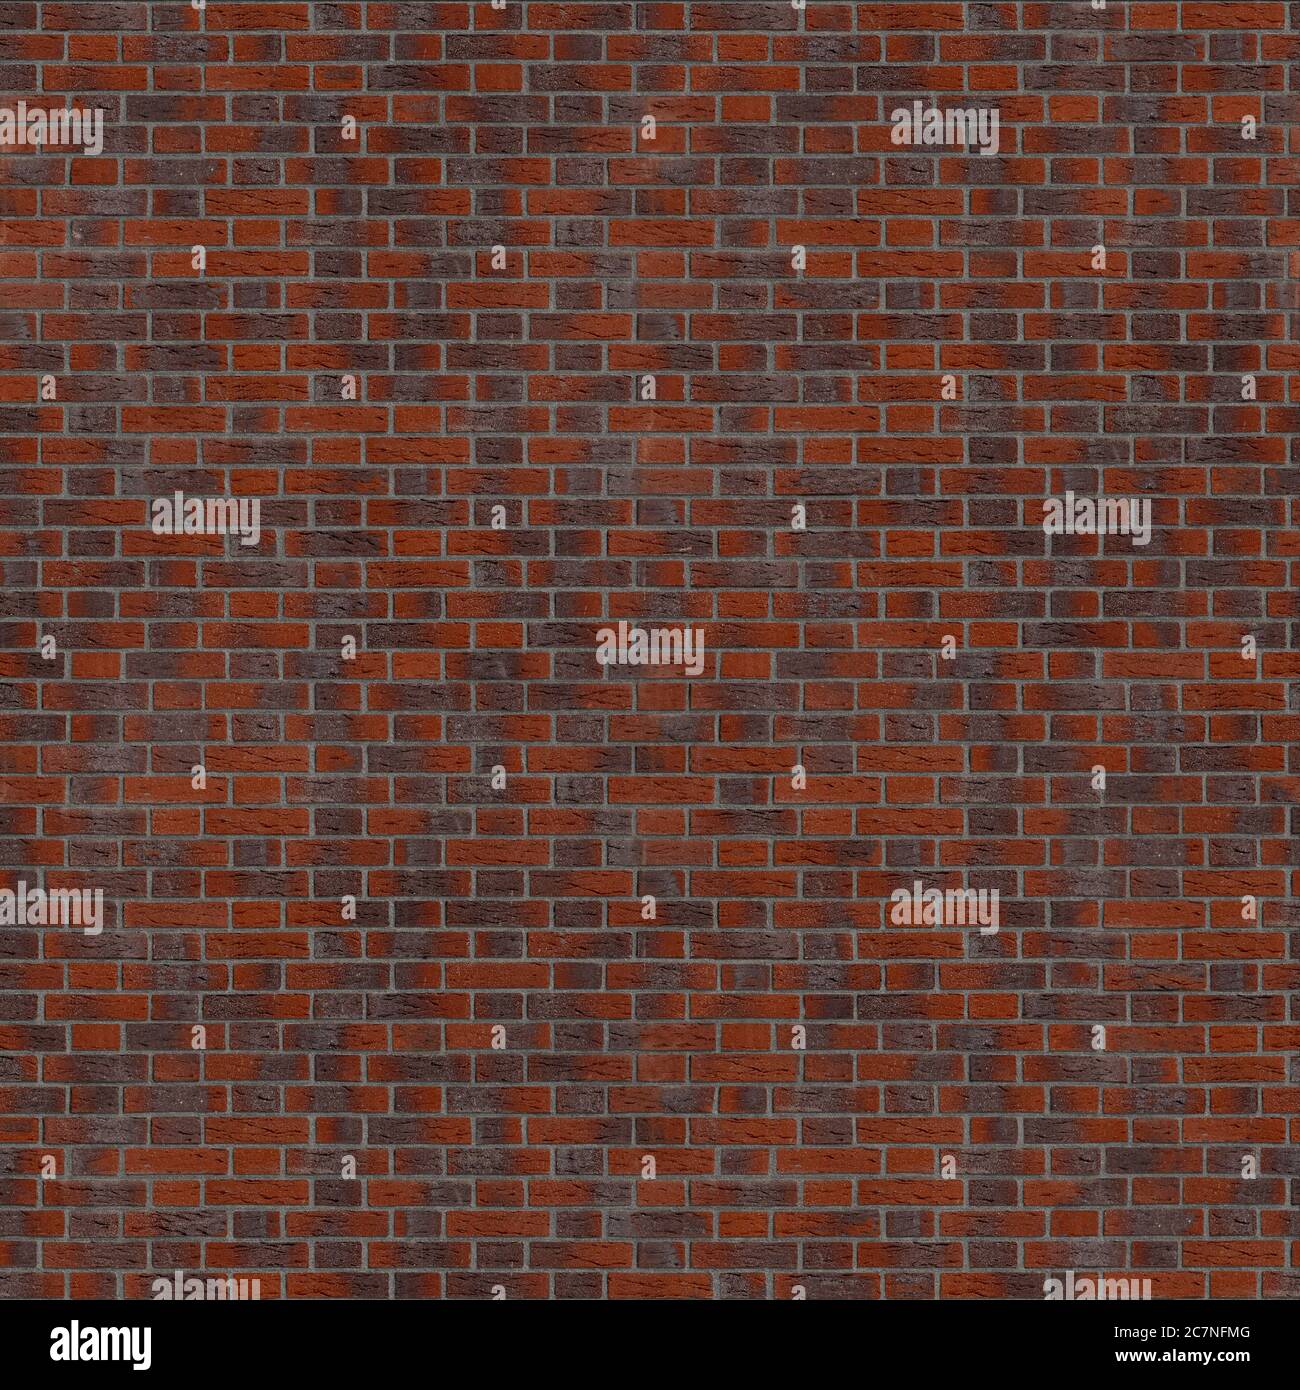 Seamless texture mur de briques de clinker bond flamand. Stuttgart. L'Allemagne. Banque D'Images